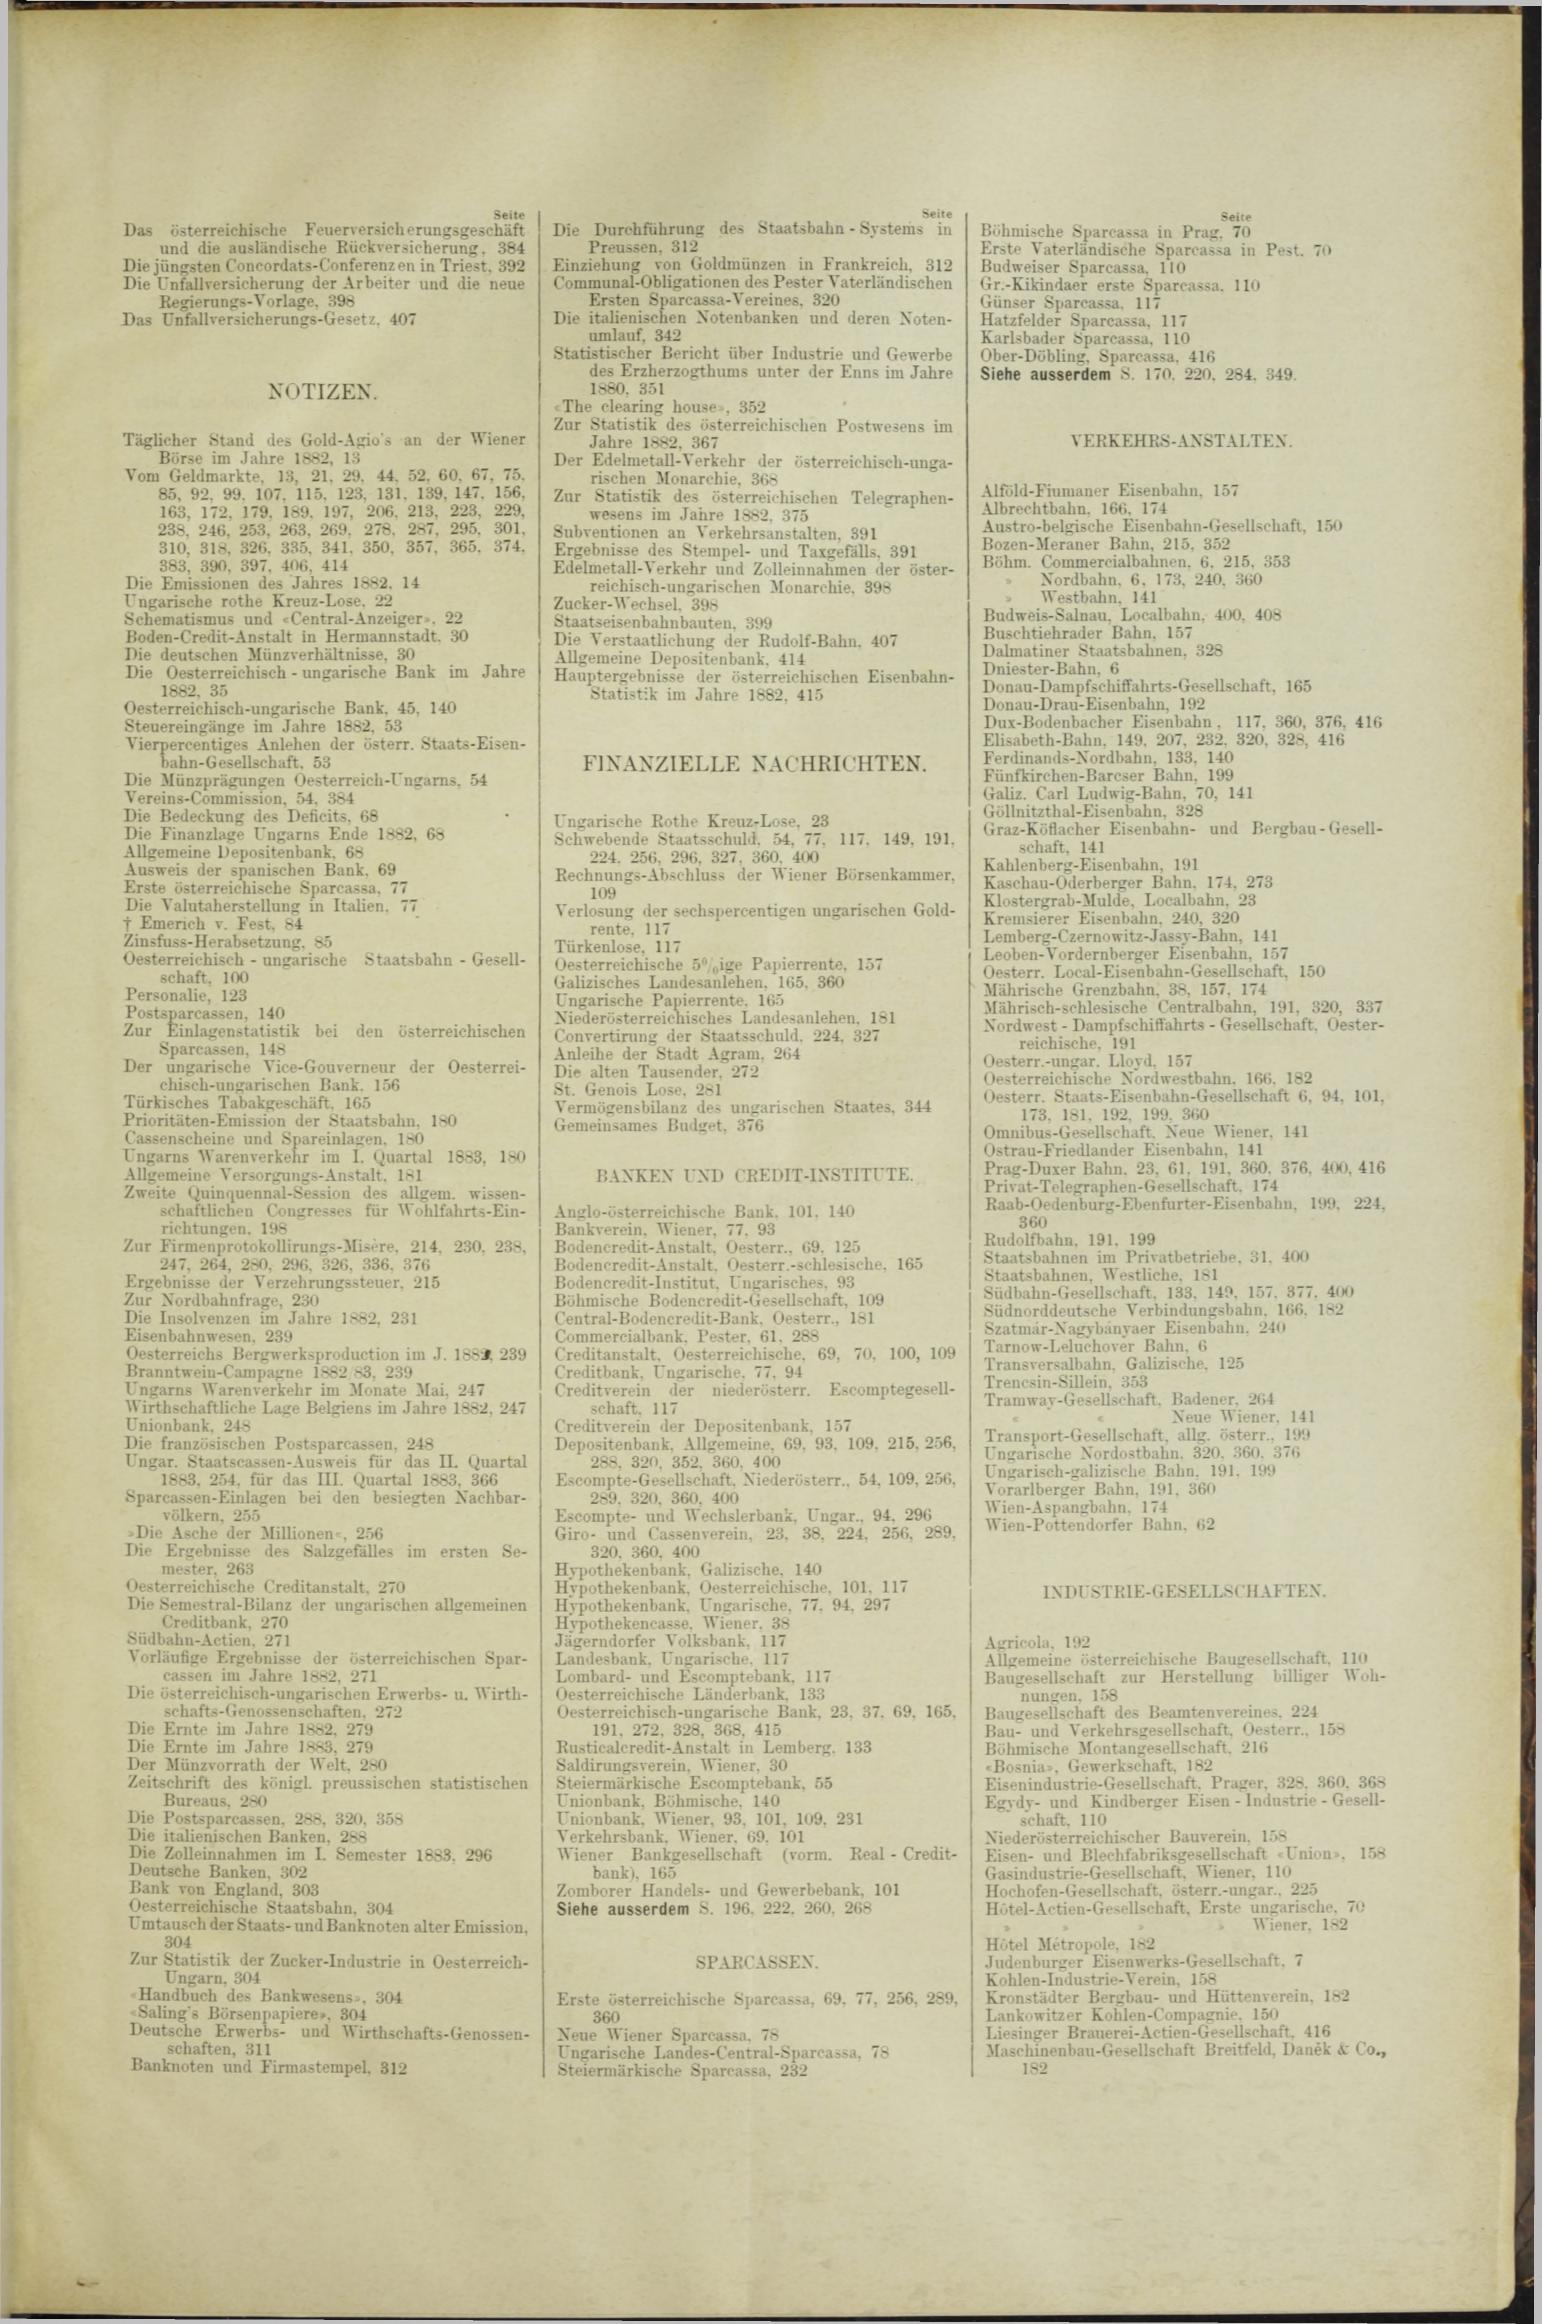 Der Tresor 28.12.1883 - Seite 11